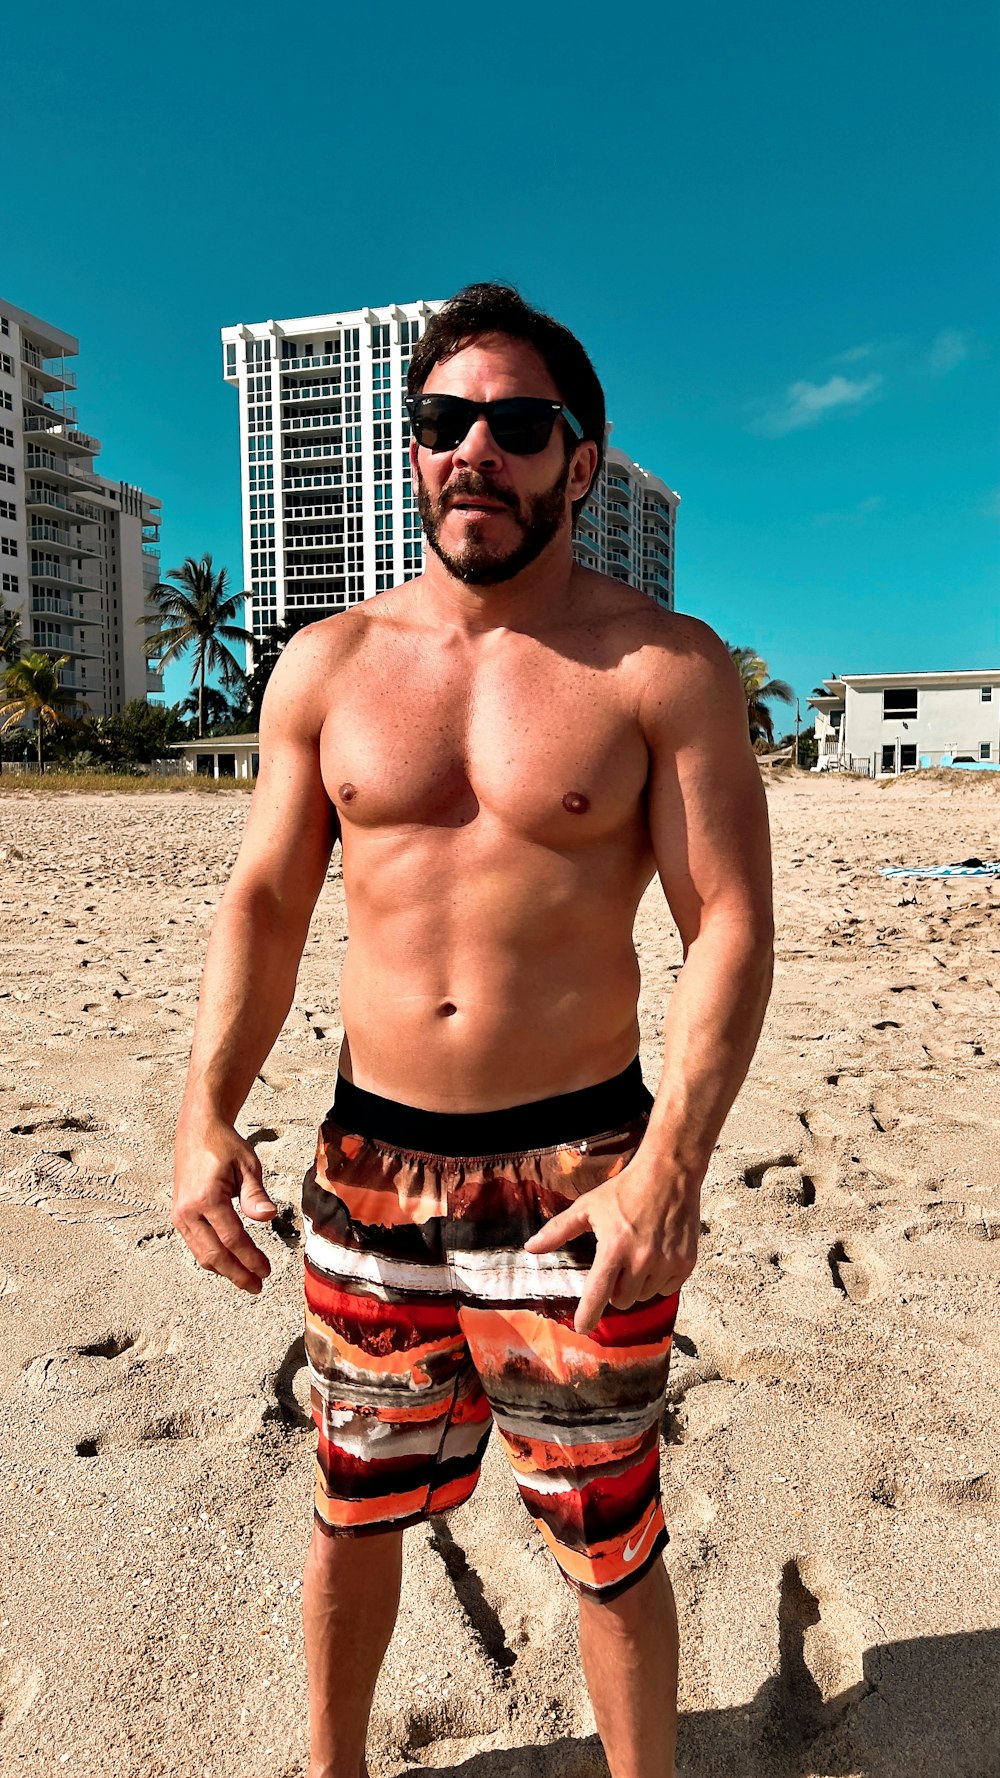 a shirtless man standing on a sandy beach